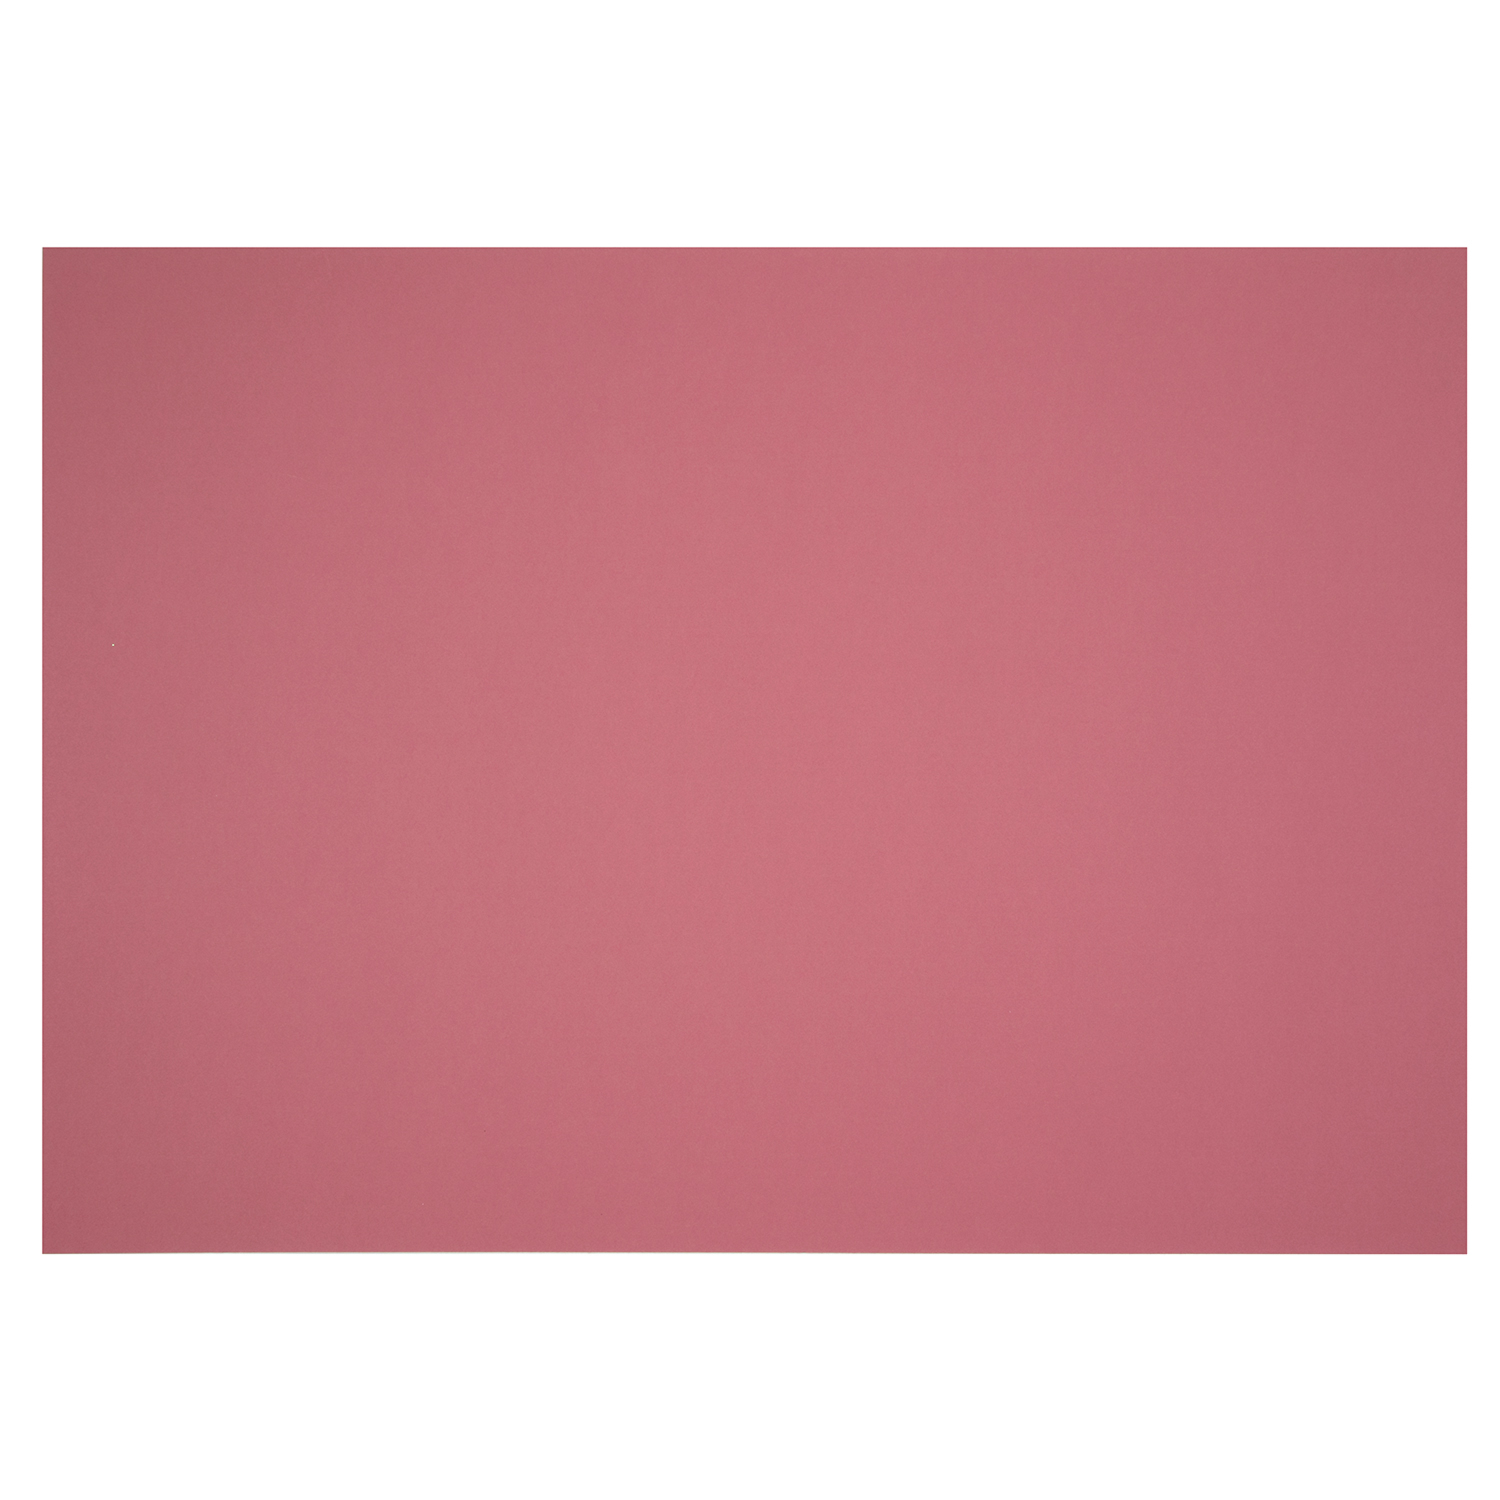 Mount Board - Dusty Pink Image